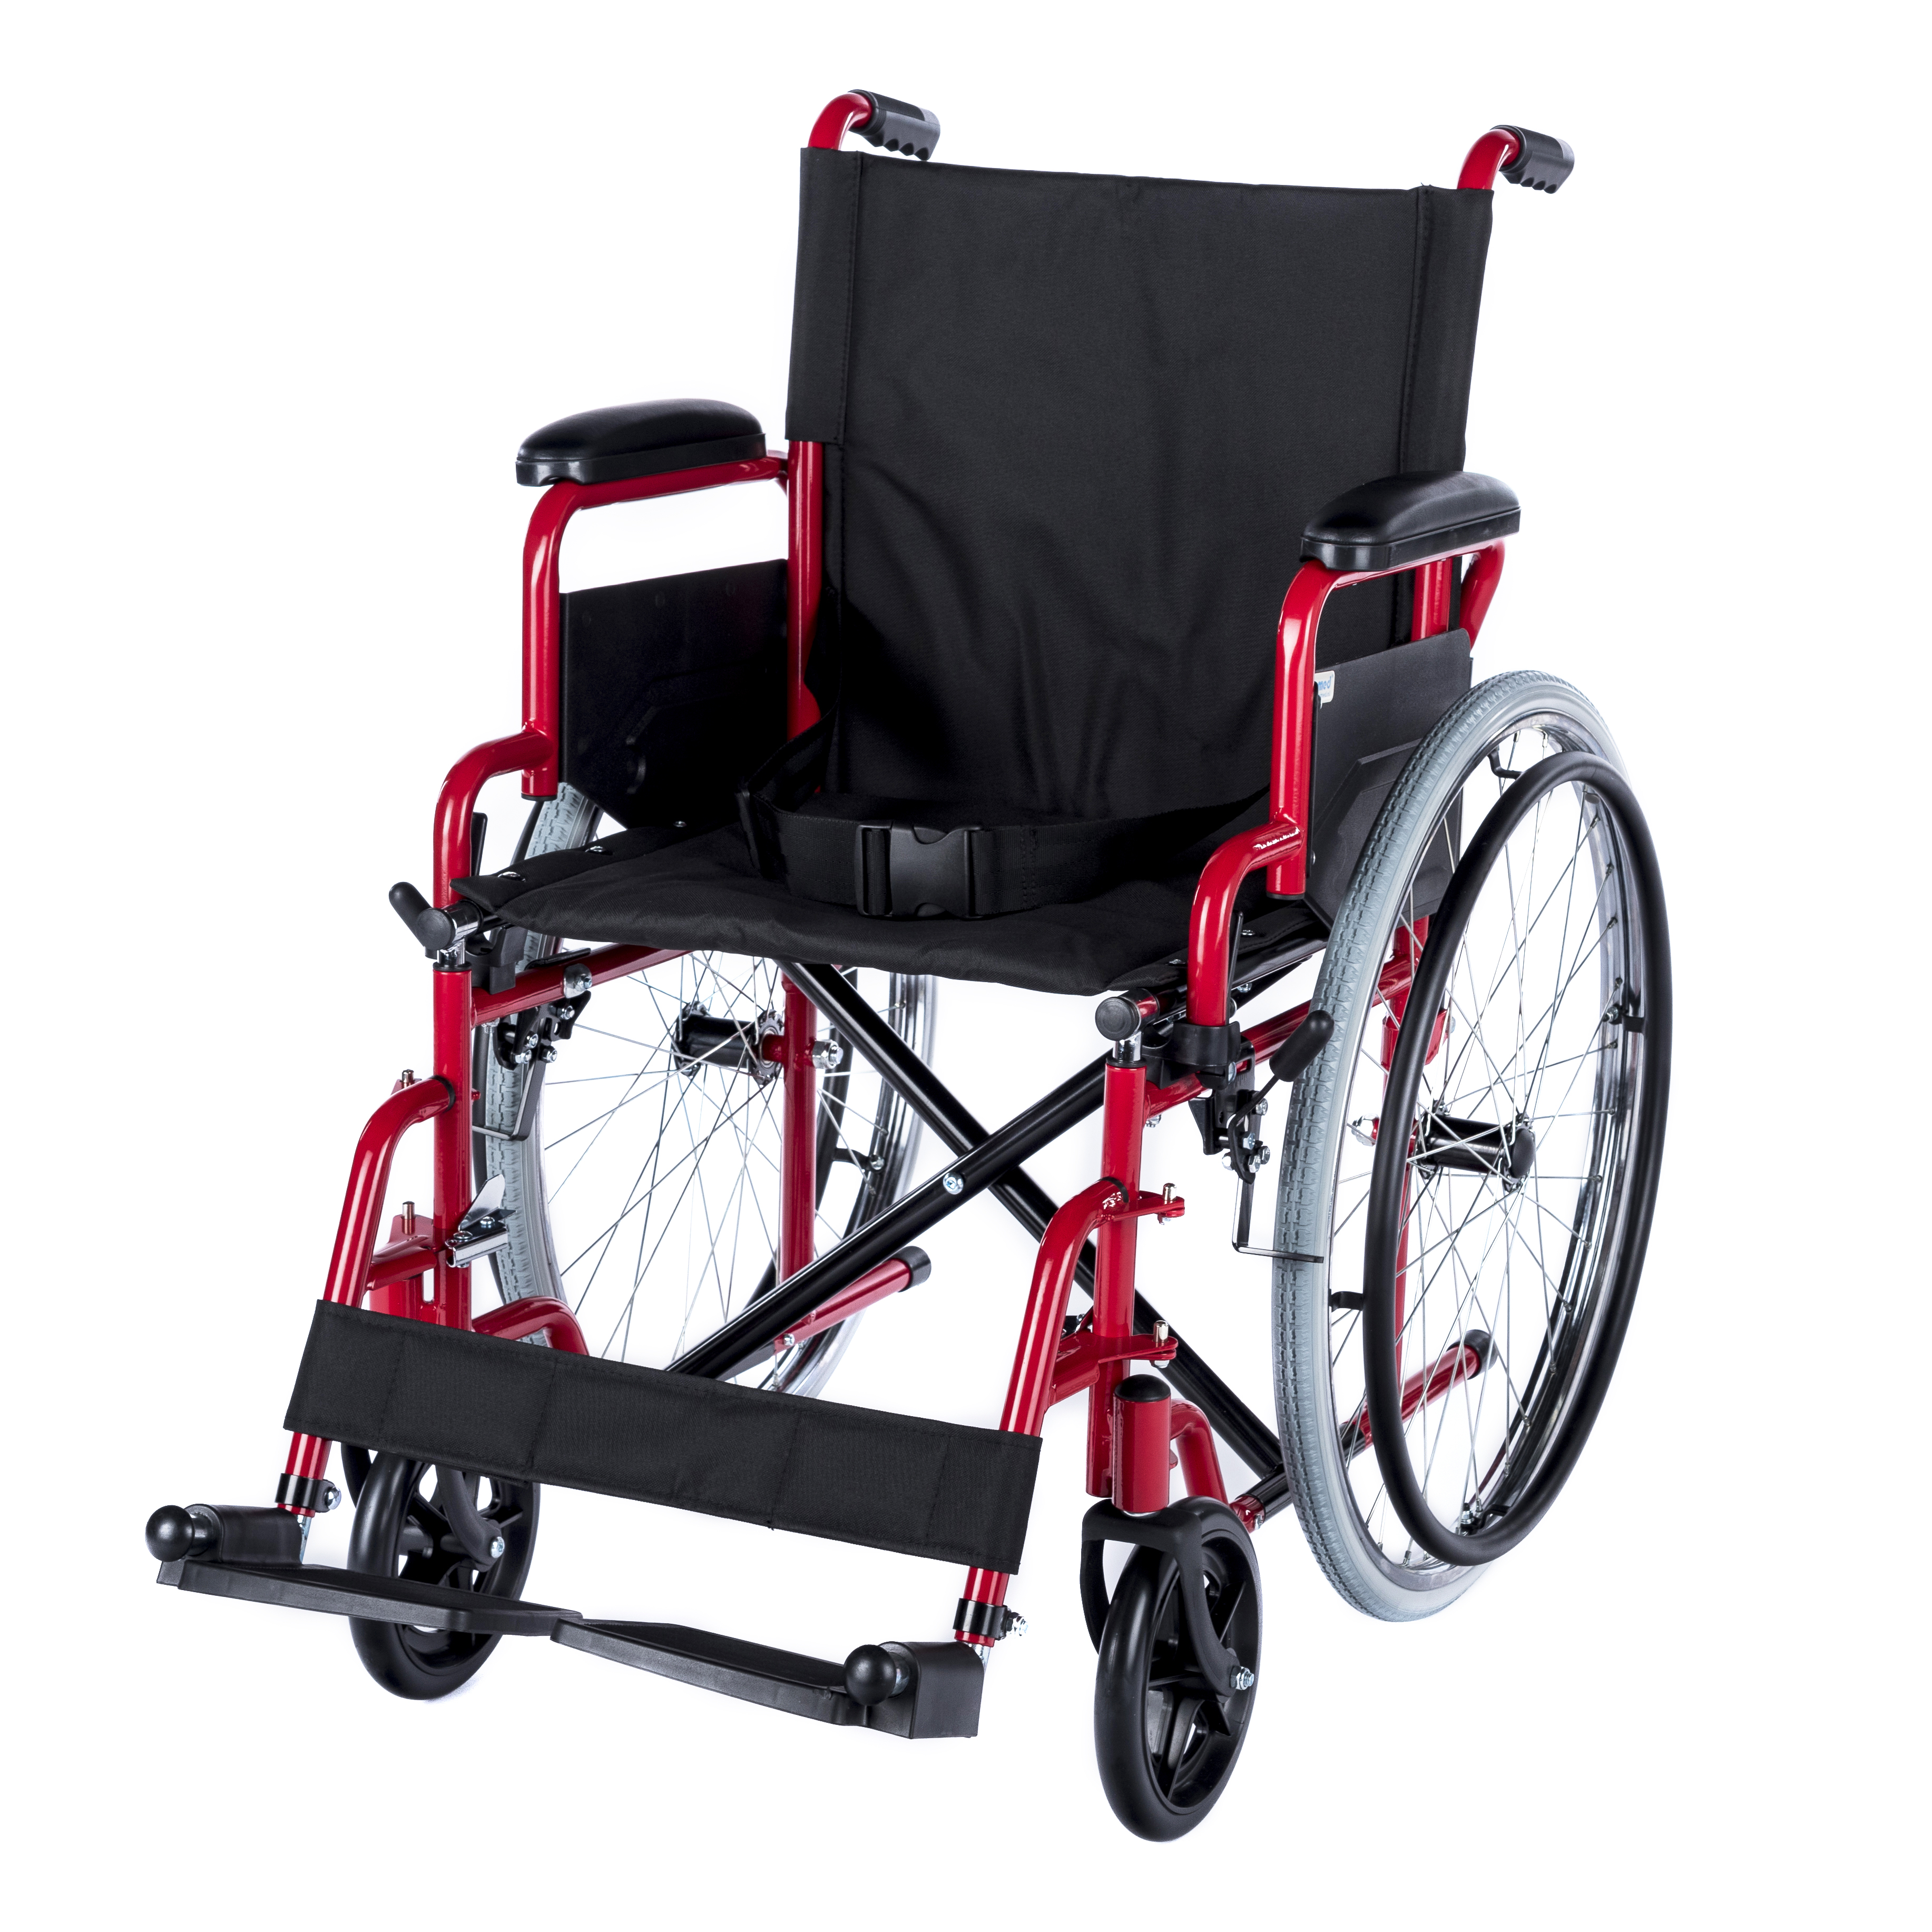 WHE-01-RED Romed inklapbare standaard rolstoel met flip-up armsteunen en uitklapbare voetsteunen.